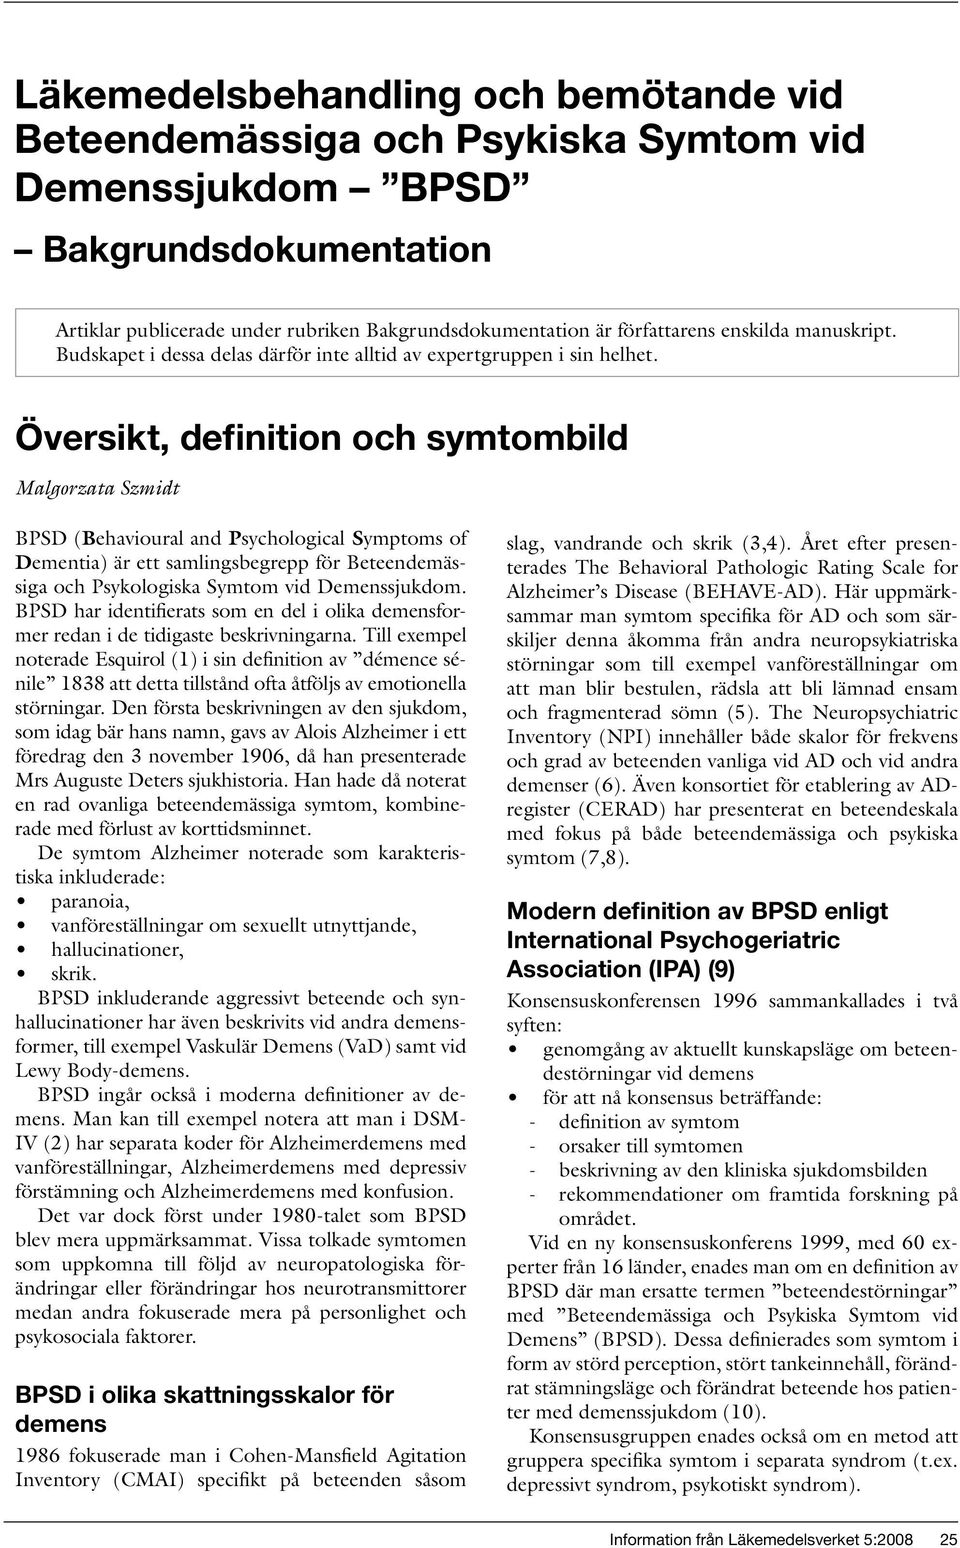 Läkemedelsbehandling och bemötande vid Beteendemässiga och Psykiska Symtom  vid Demenssjukdom BPSD - PDF Gratis nedladdning